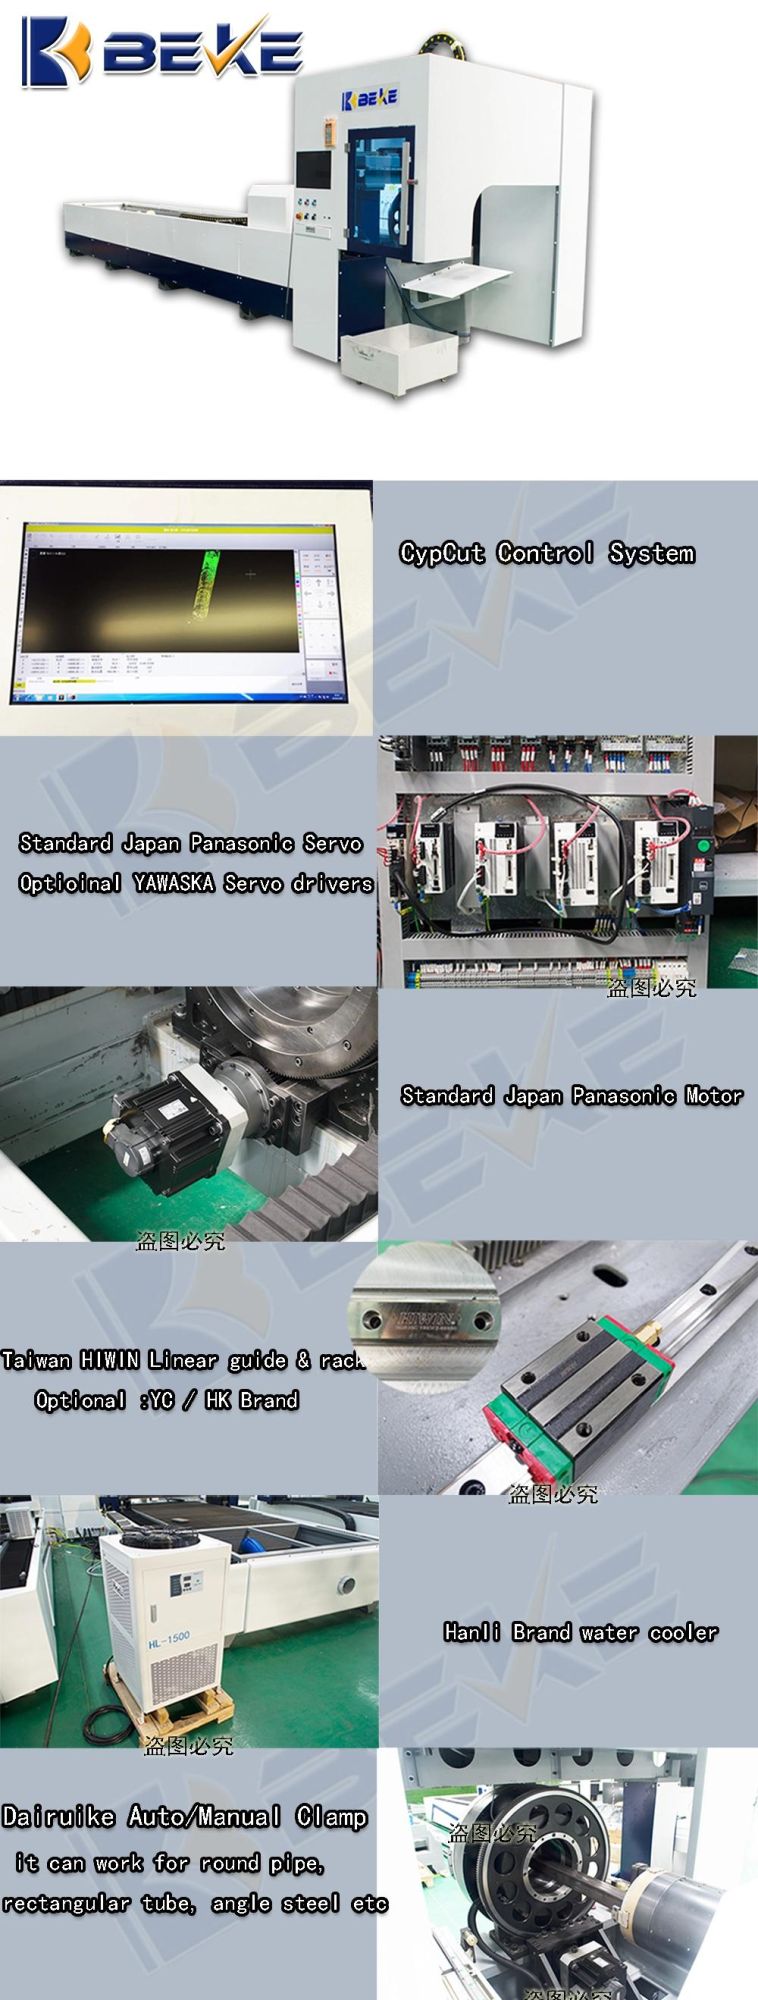 Aluminum Tube Fiber Laser Cutting Machine CNC Tube Cutter Machine Sale Online